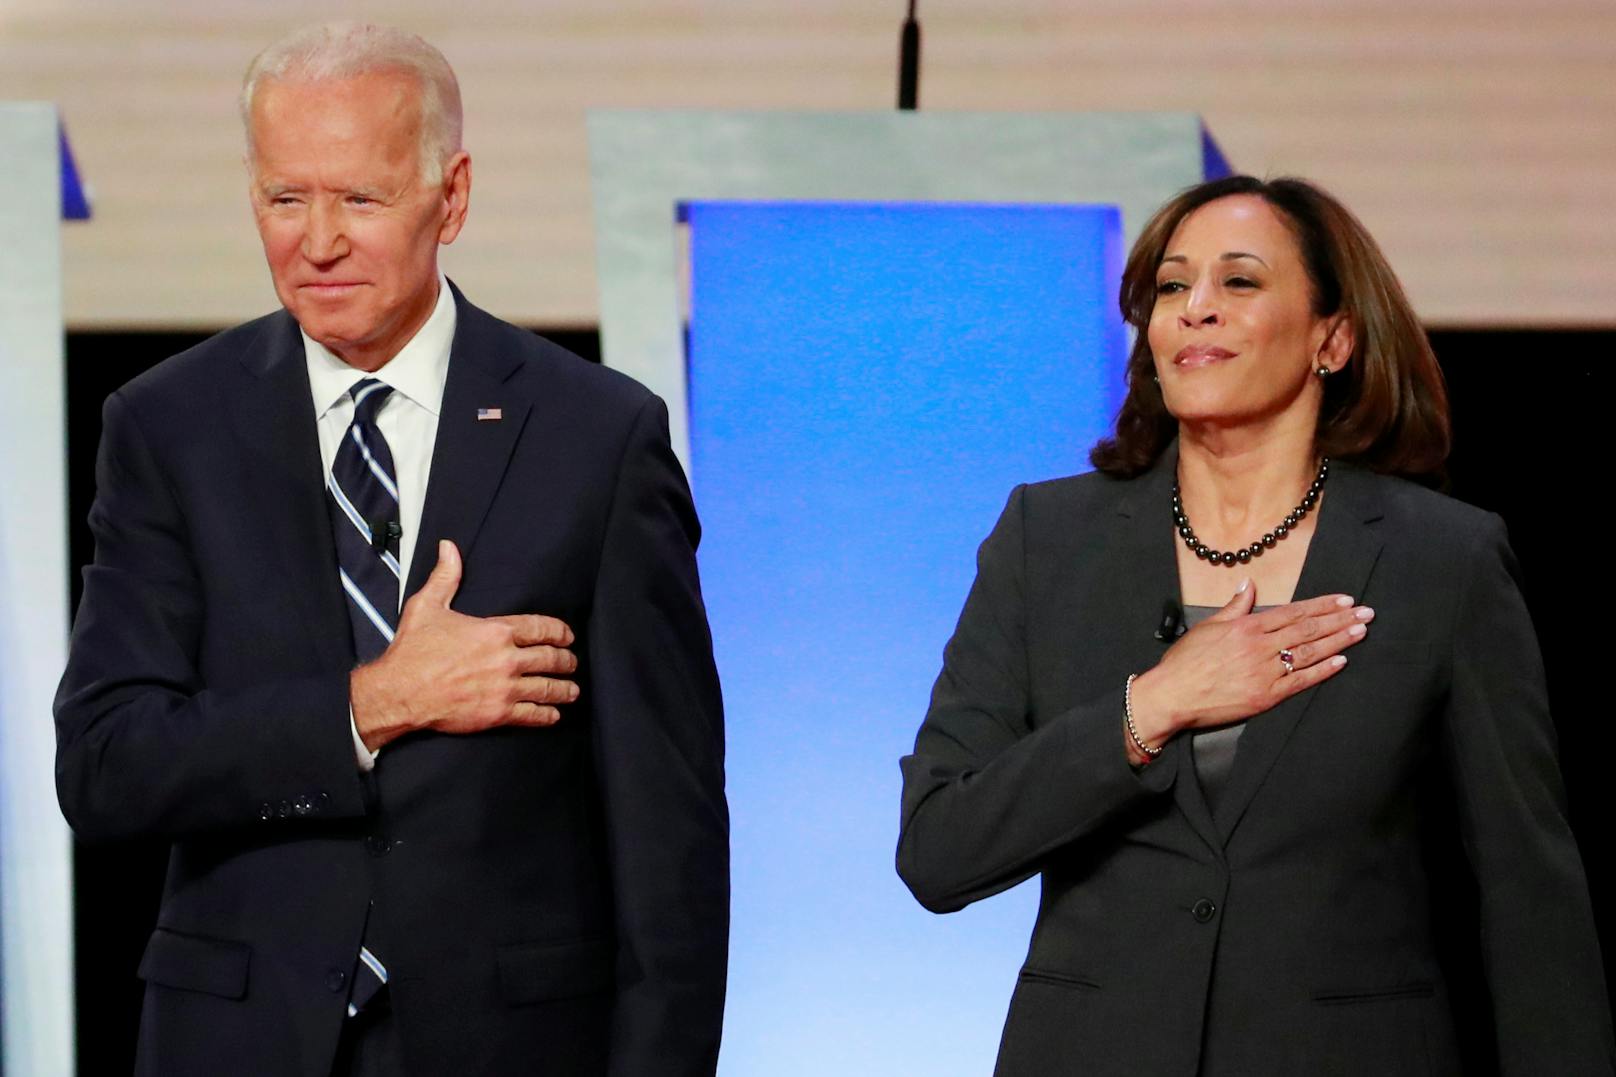 Biden ging mit der 55-jährigen Kamala Harris als Kandidatin für das Amt der Vizepräsidentin in den Wahlkampf der US-Wahl 2020.